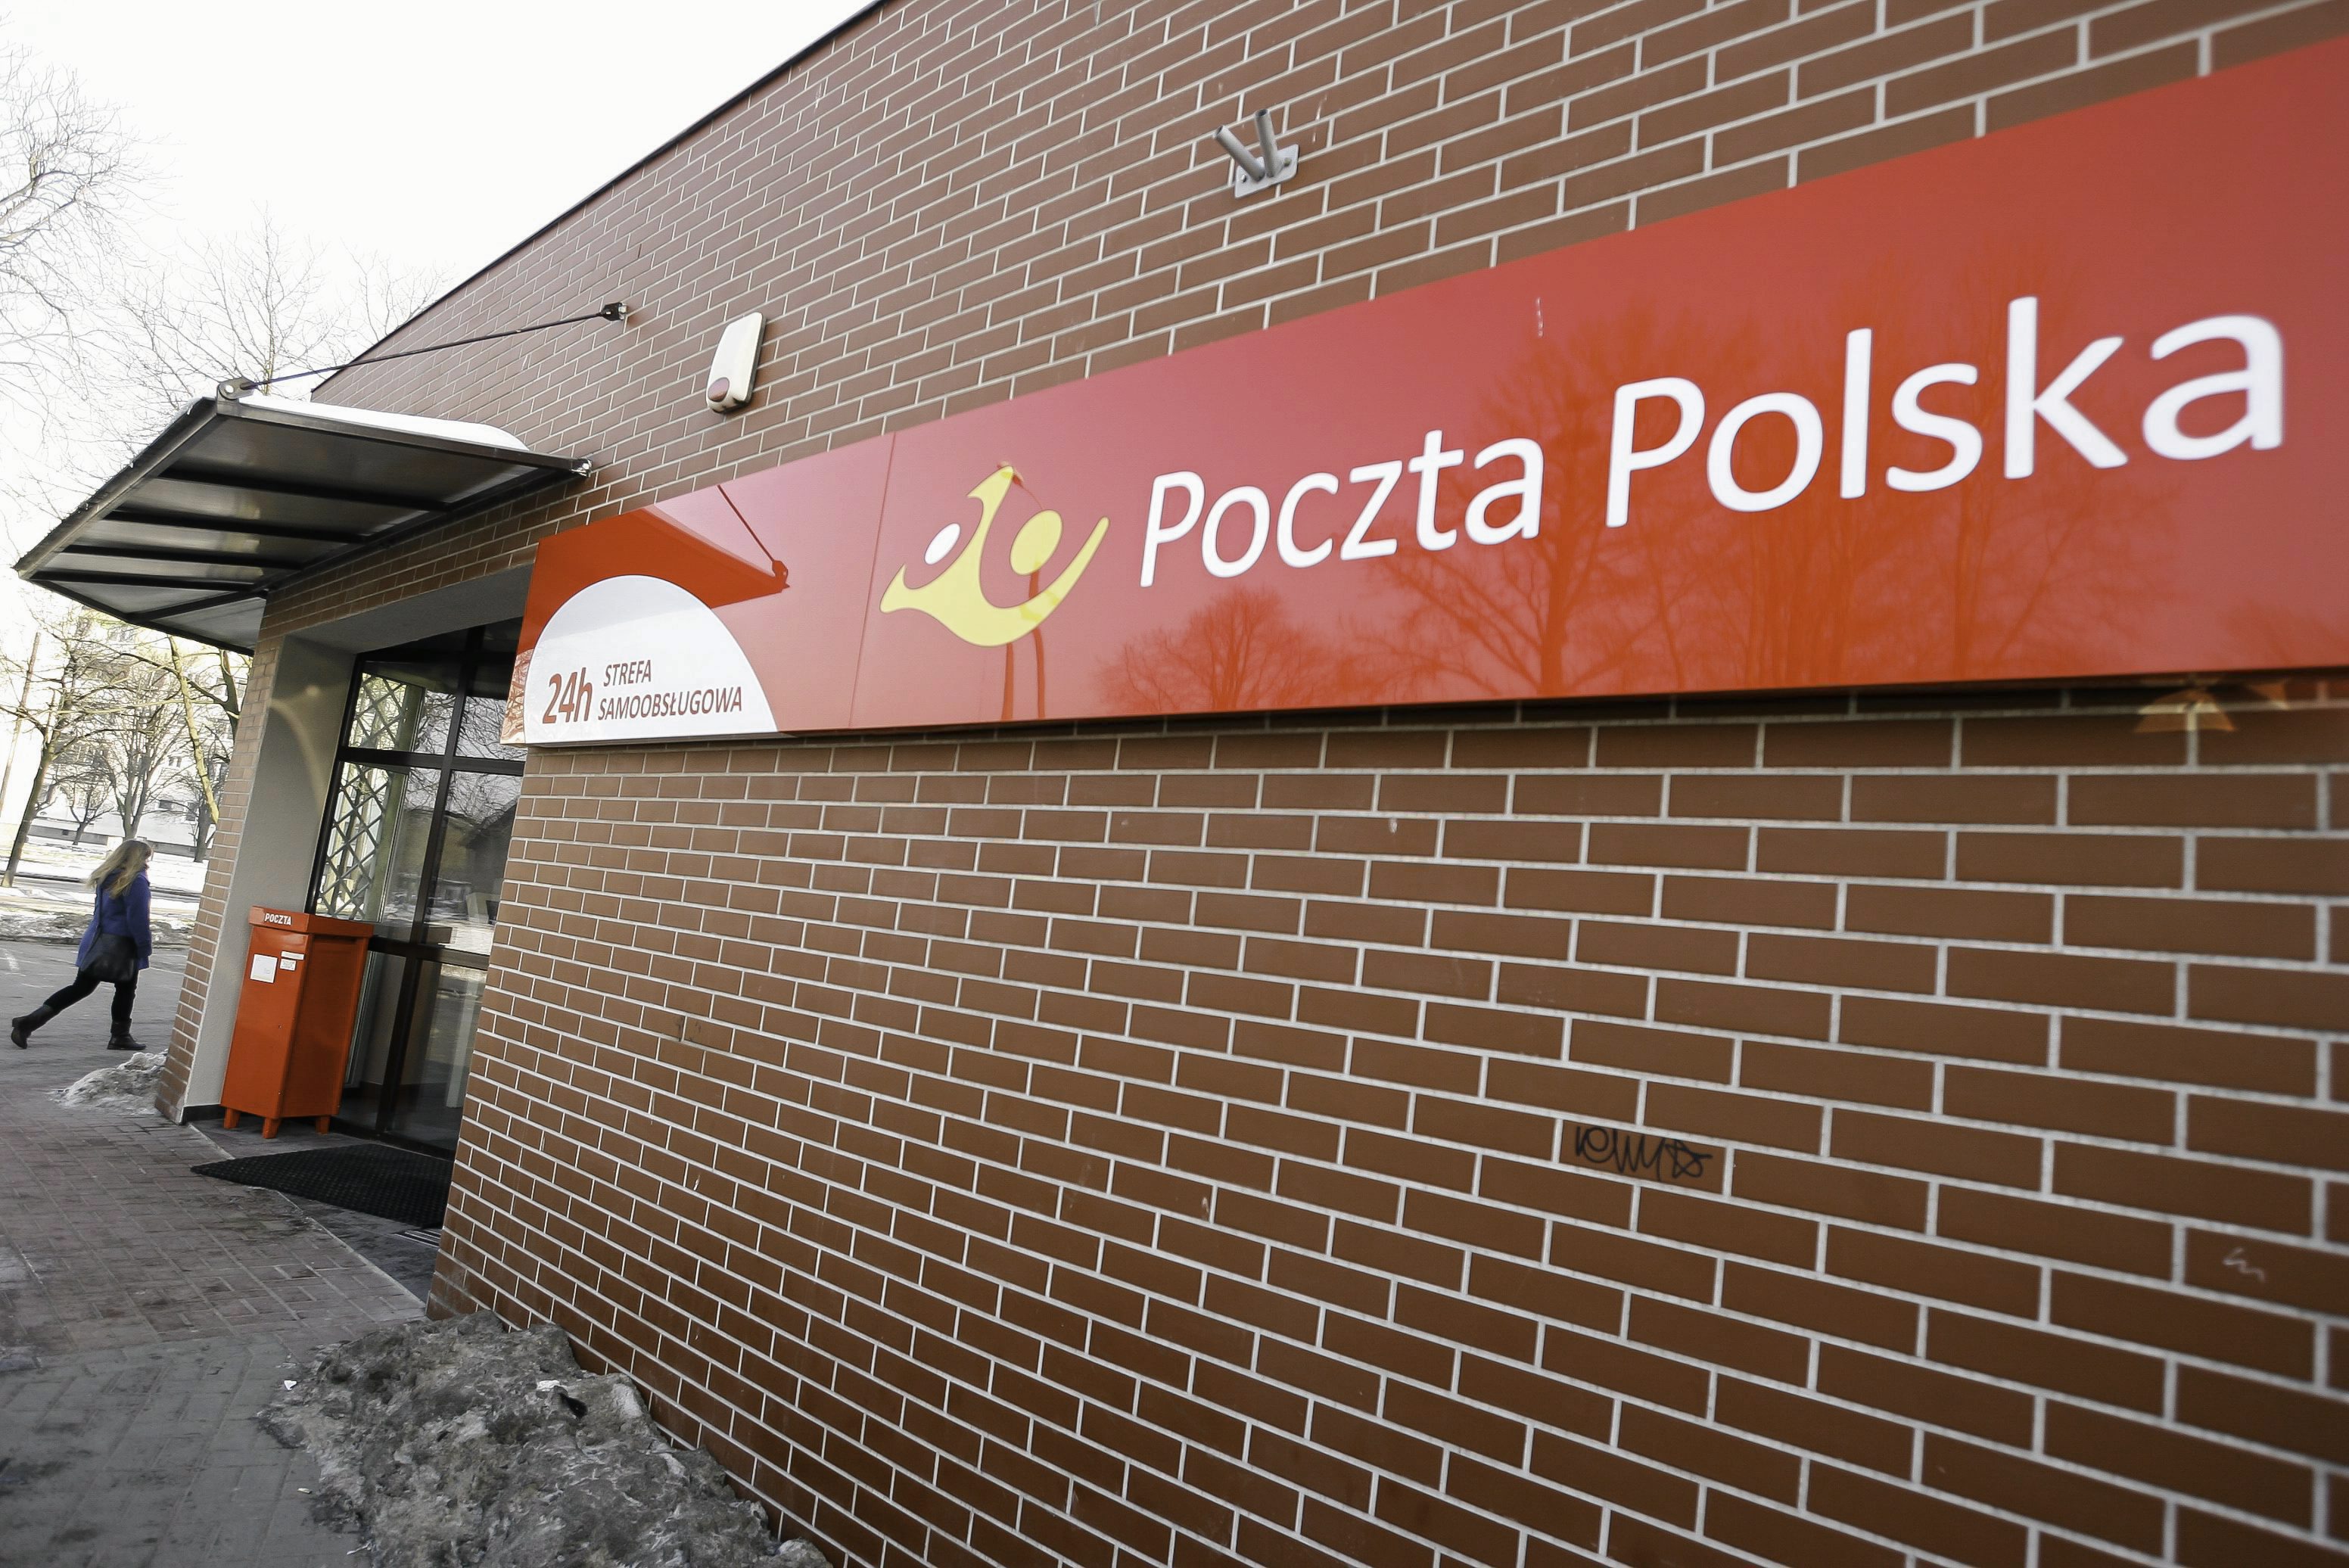 Dziwne zapisy w przetargu dla Poczty Polskiej. "To była omyłka pisarska" -  Dziennik.pl